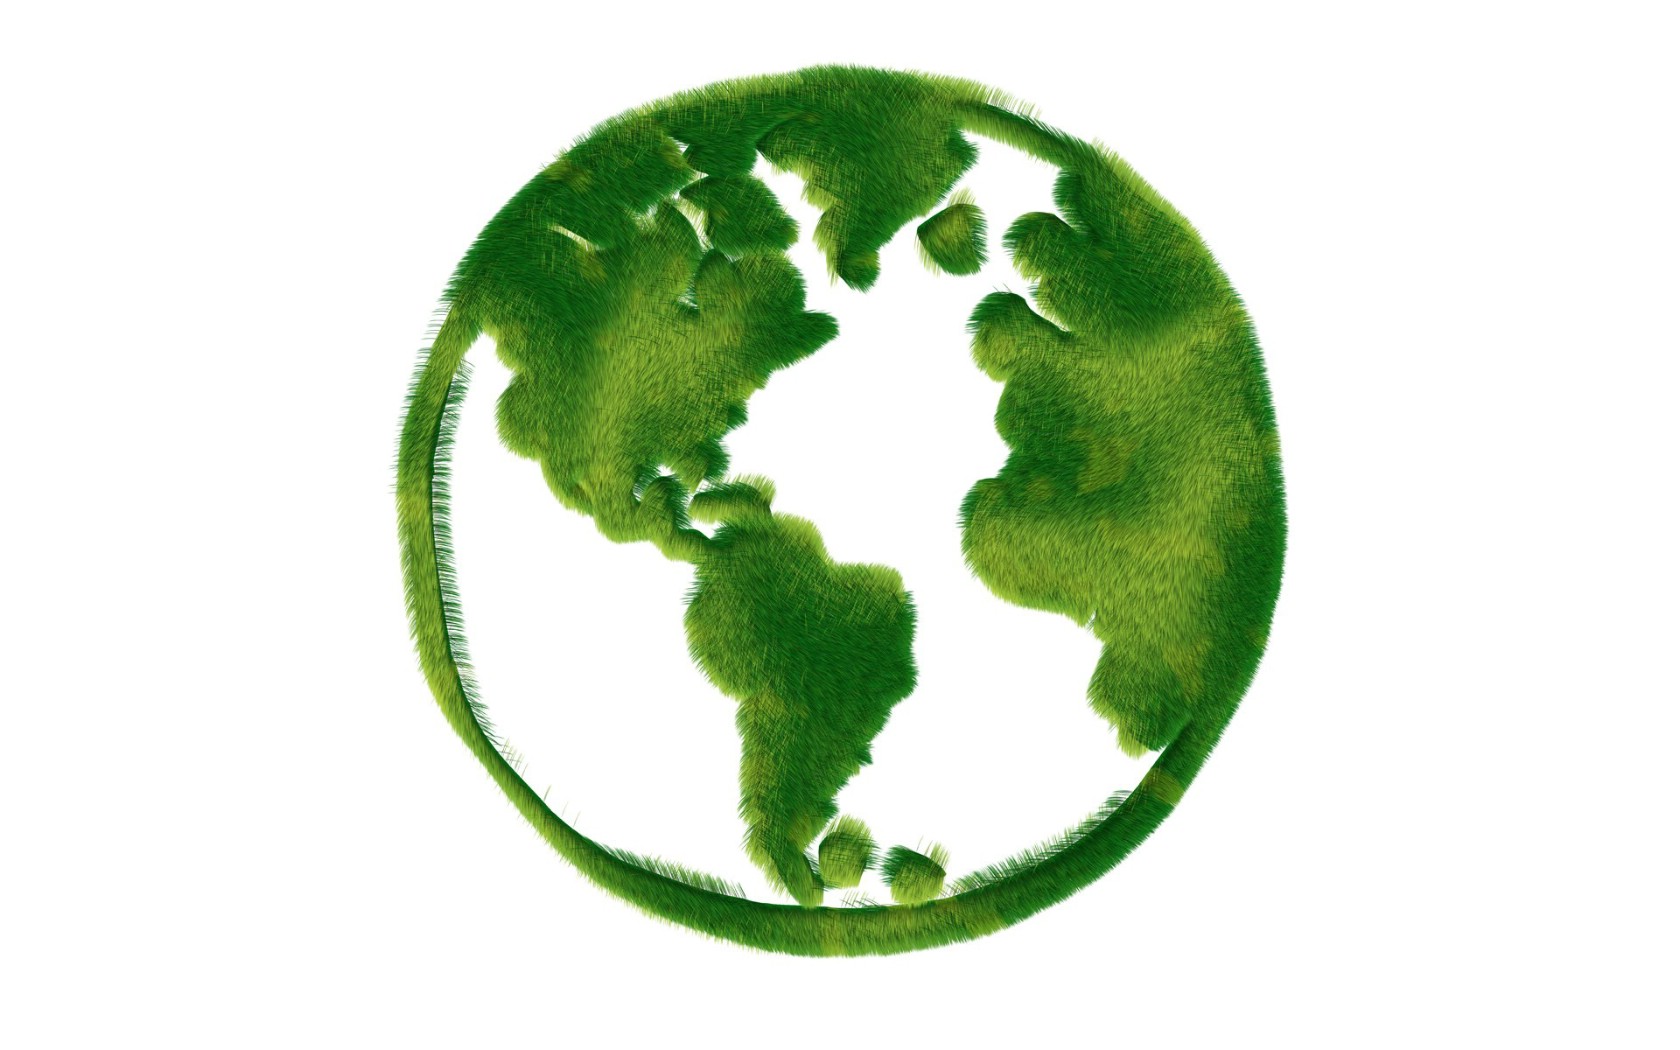 壁纸1680x1050 绿色地球 绿色和平环保标志 1920 1200壁纸 绿色和平环保标志-循环利用壁纸 绿色和平环保标志-循环利用图片 绿色和平环保标志-循环利用素材 插画壁纸 插画图库 插画图片素材桌面壁纸